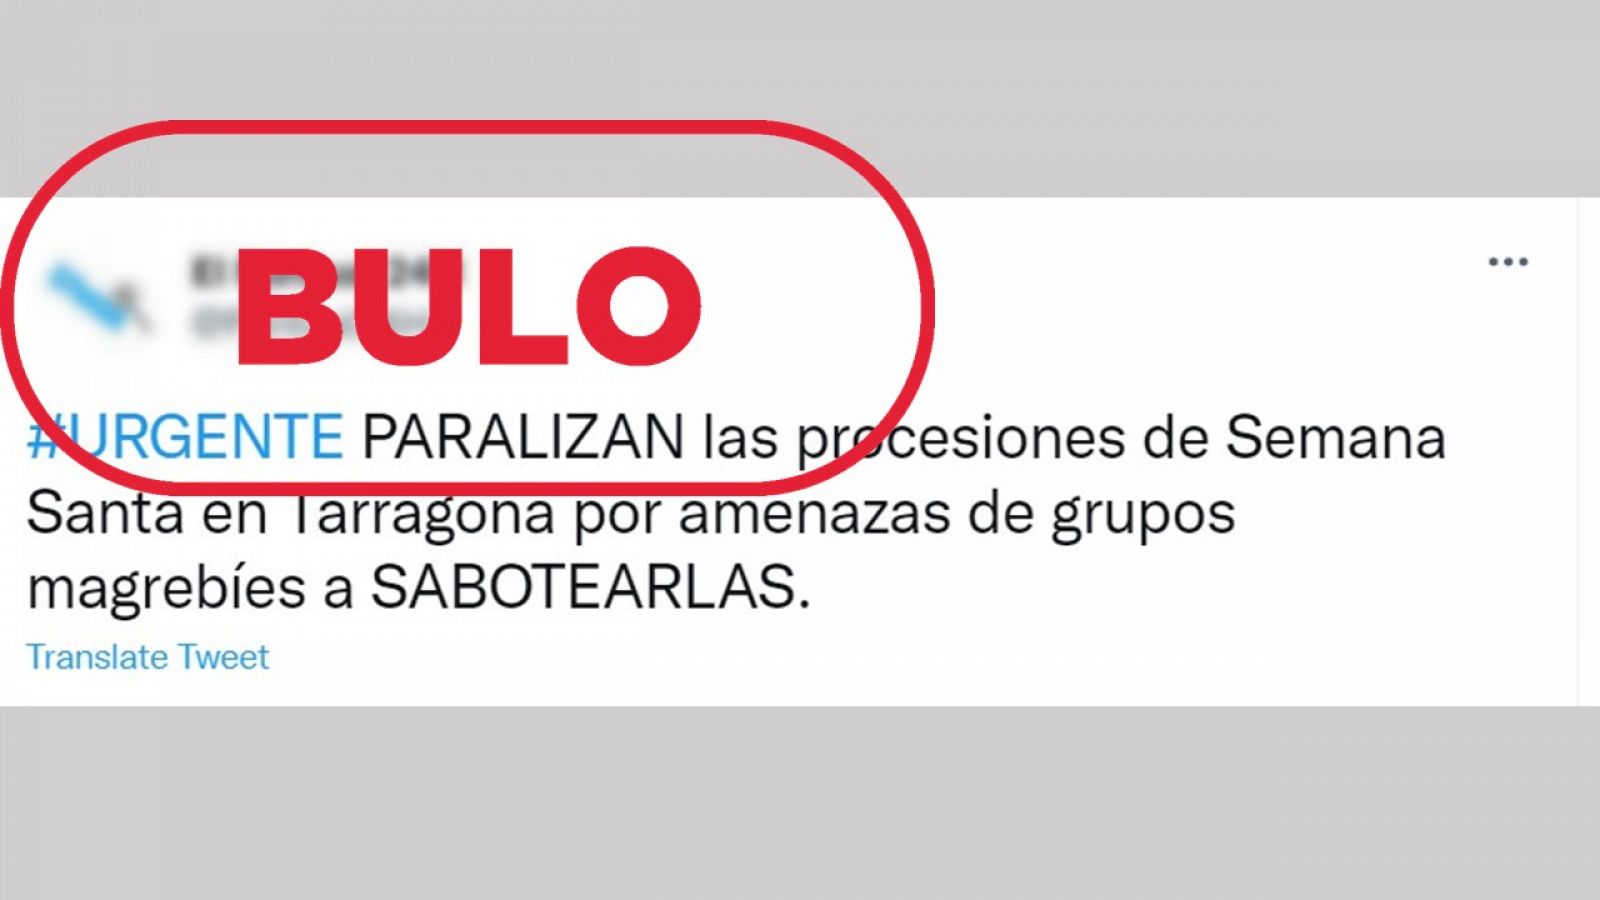 Uno de los mensajes que difunden el bulo de la paralización de las procesiones en Tarragona con el sello: bulo